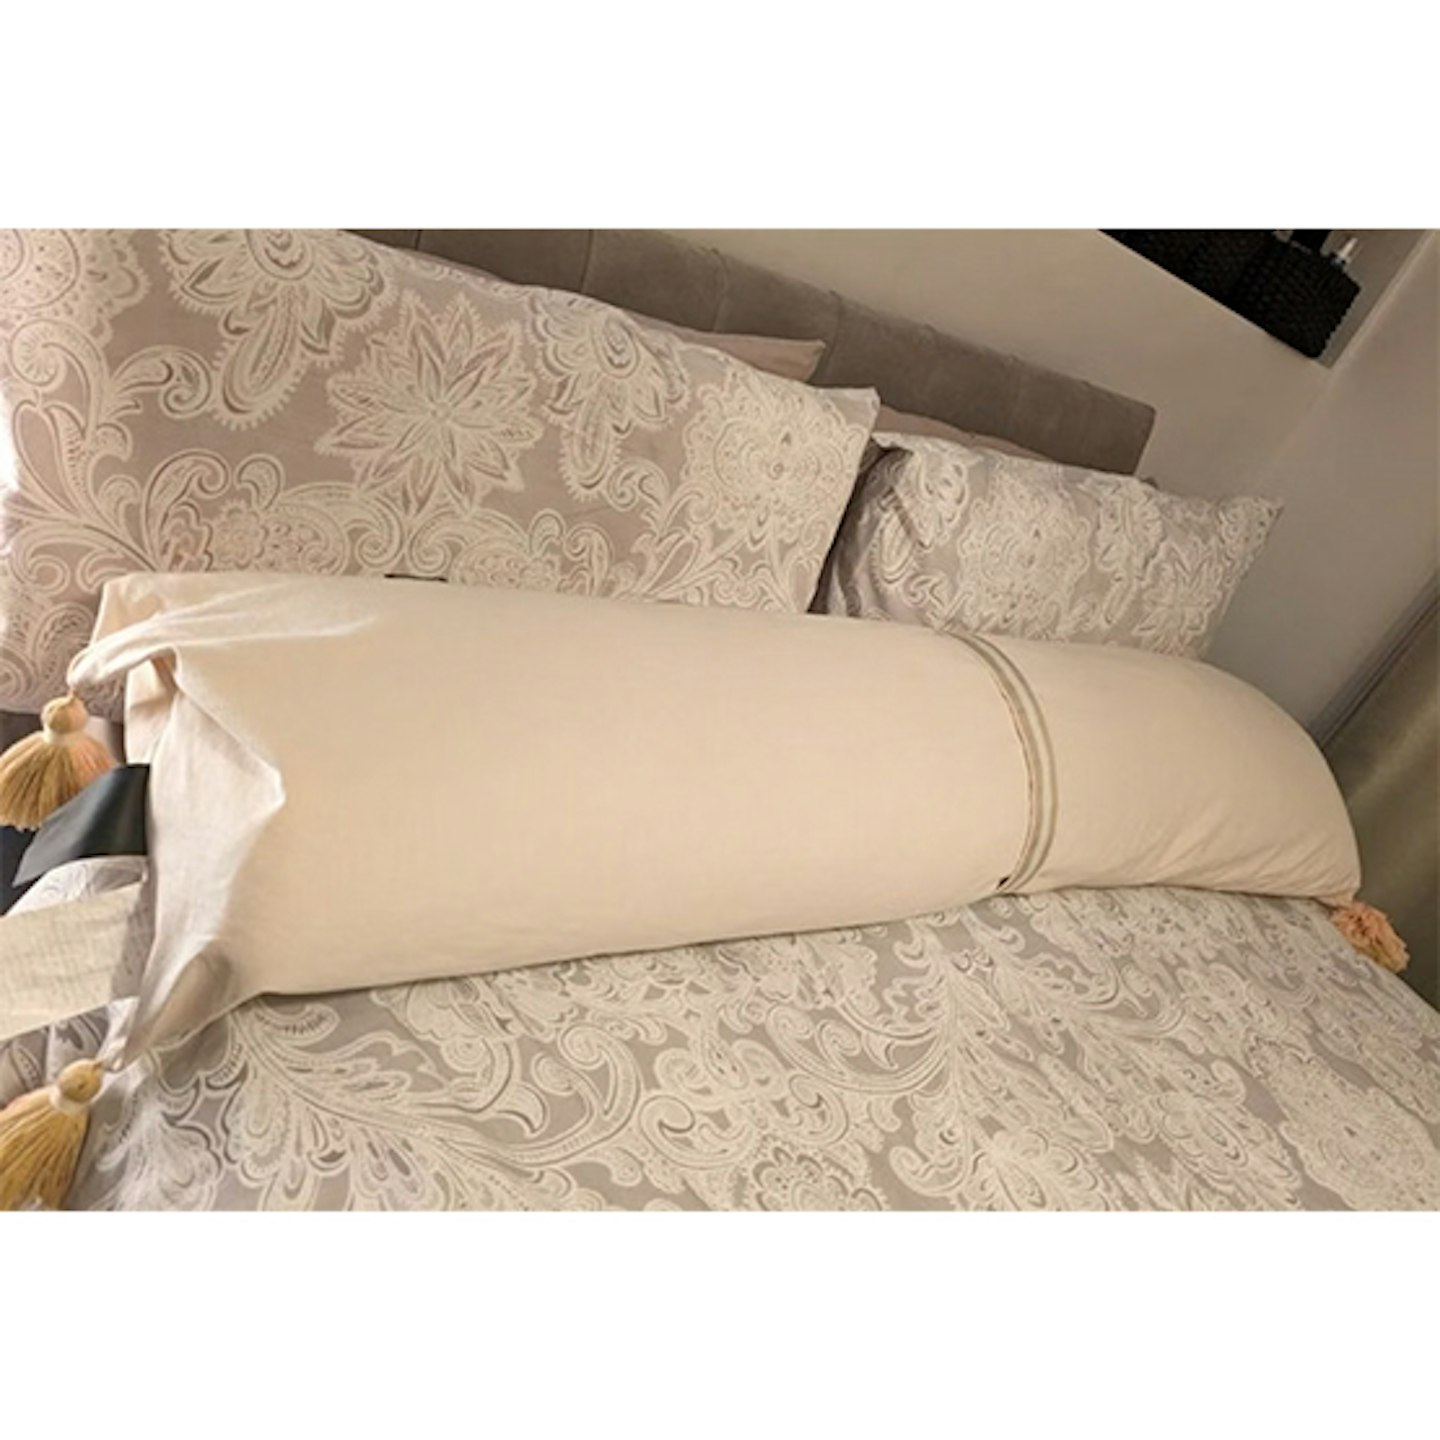 DockATot Cosset body pillow review